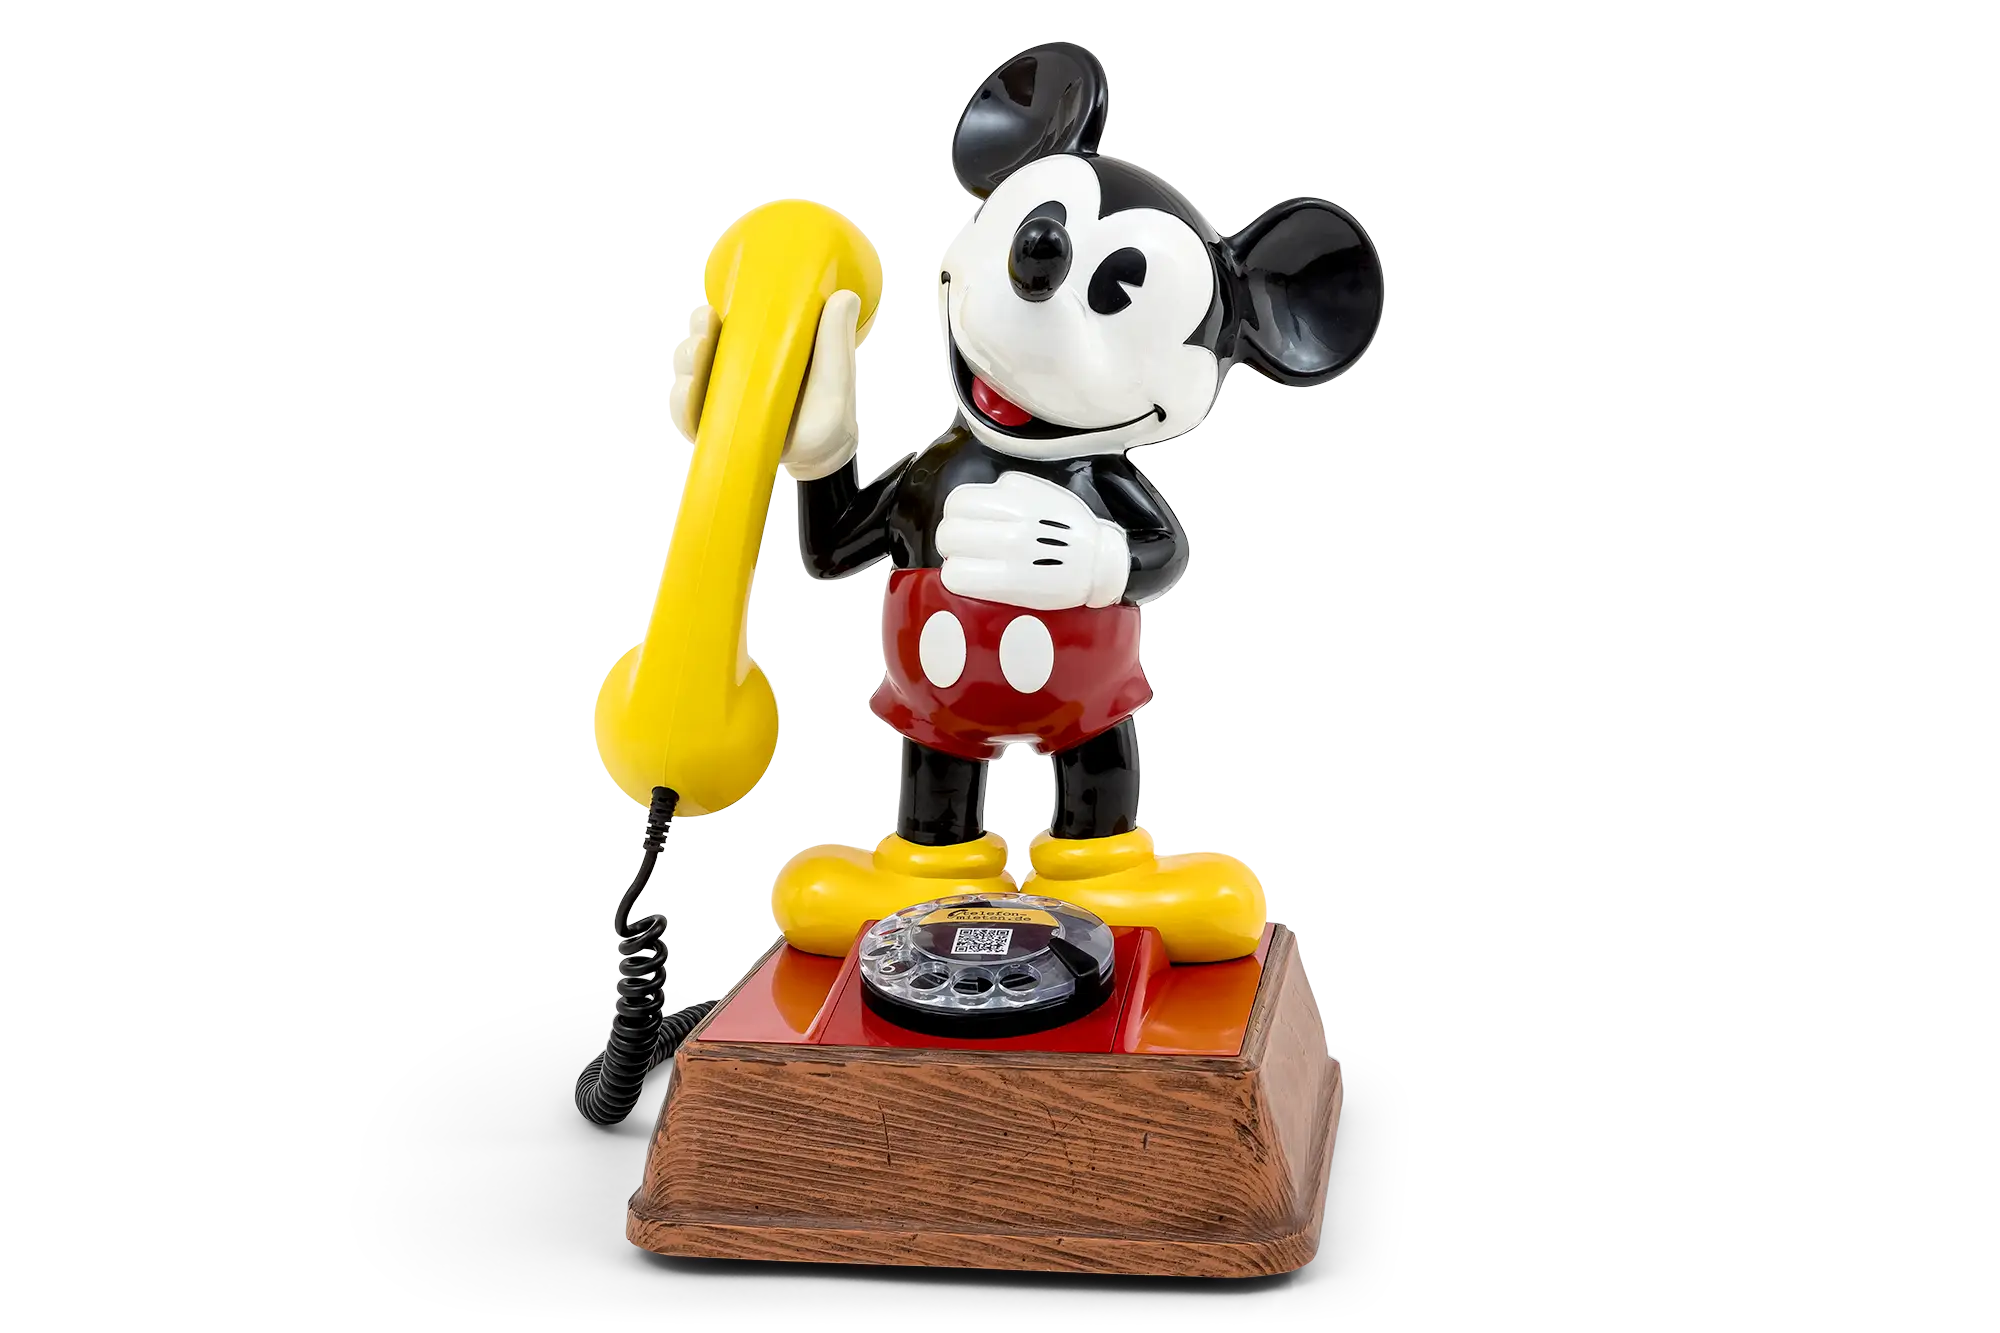 Micky ist das absolute Highlight auf jedem Kindergeburtstag. Dieses Audio Gästebuch wird mit einer Micky Maus Stimme als Standardansage geliefert.